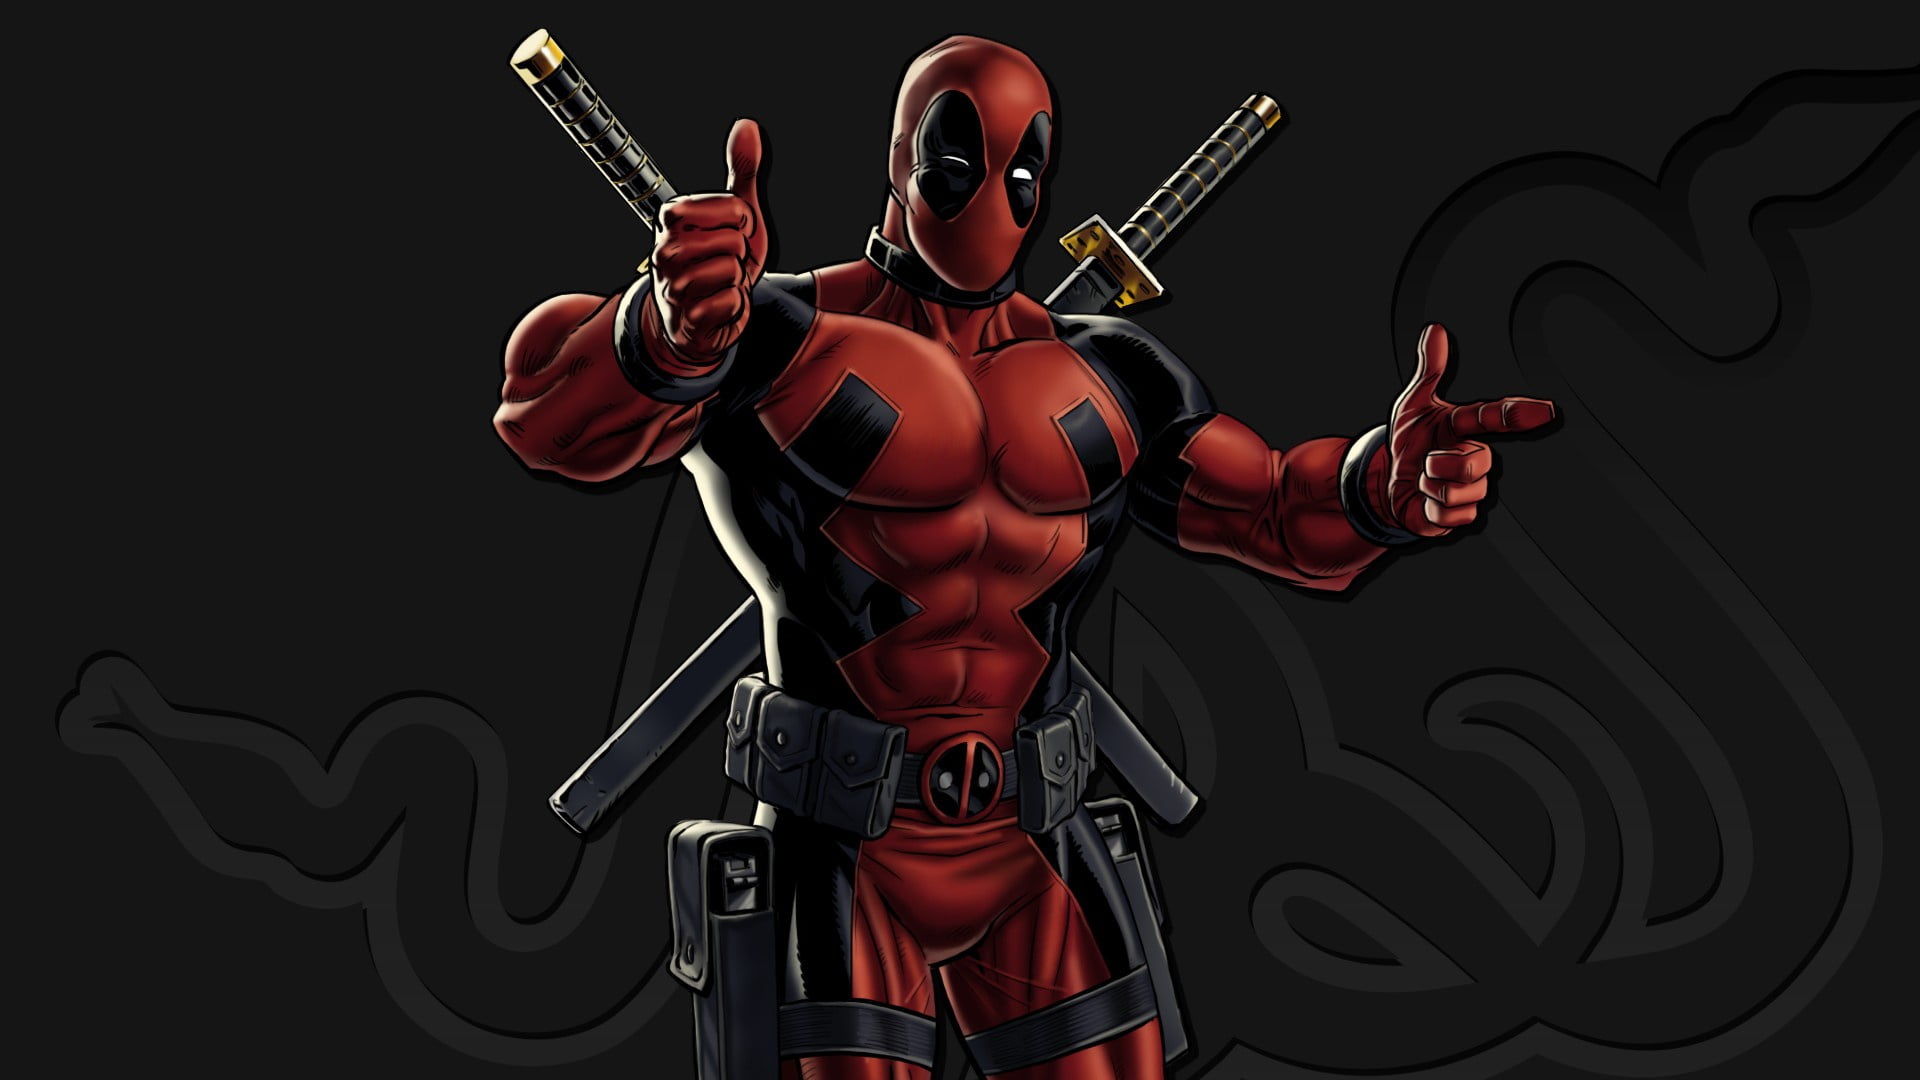 Marvel Deadpool digital wallpaper, red, sword, gun, pistol, logo